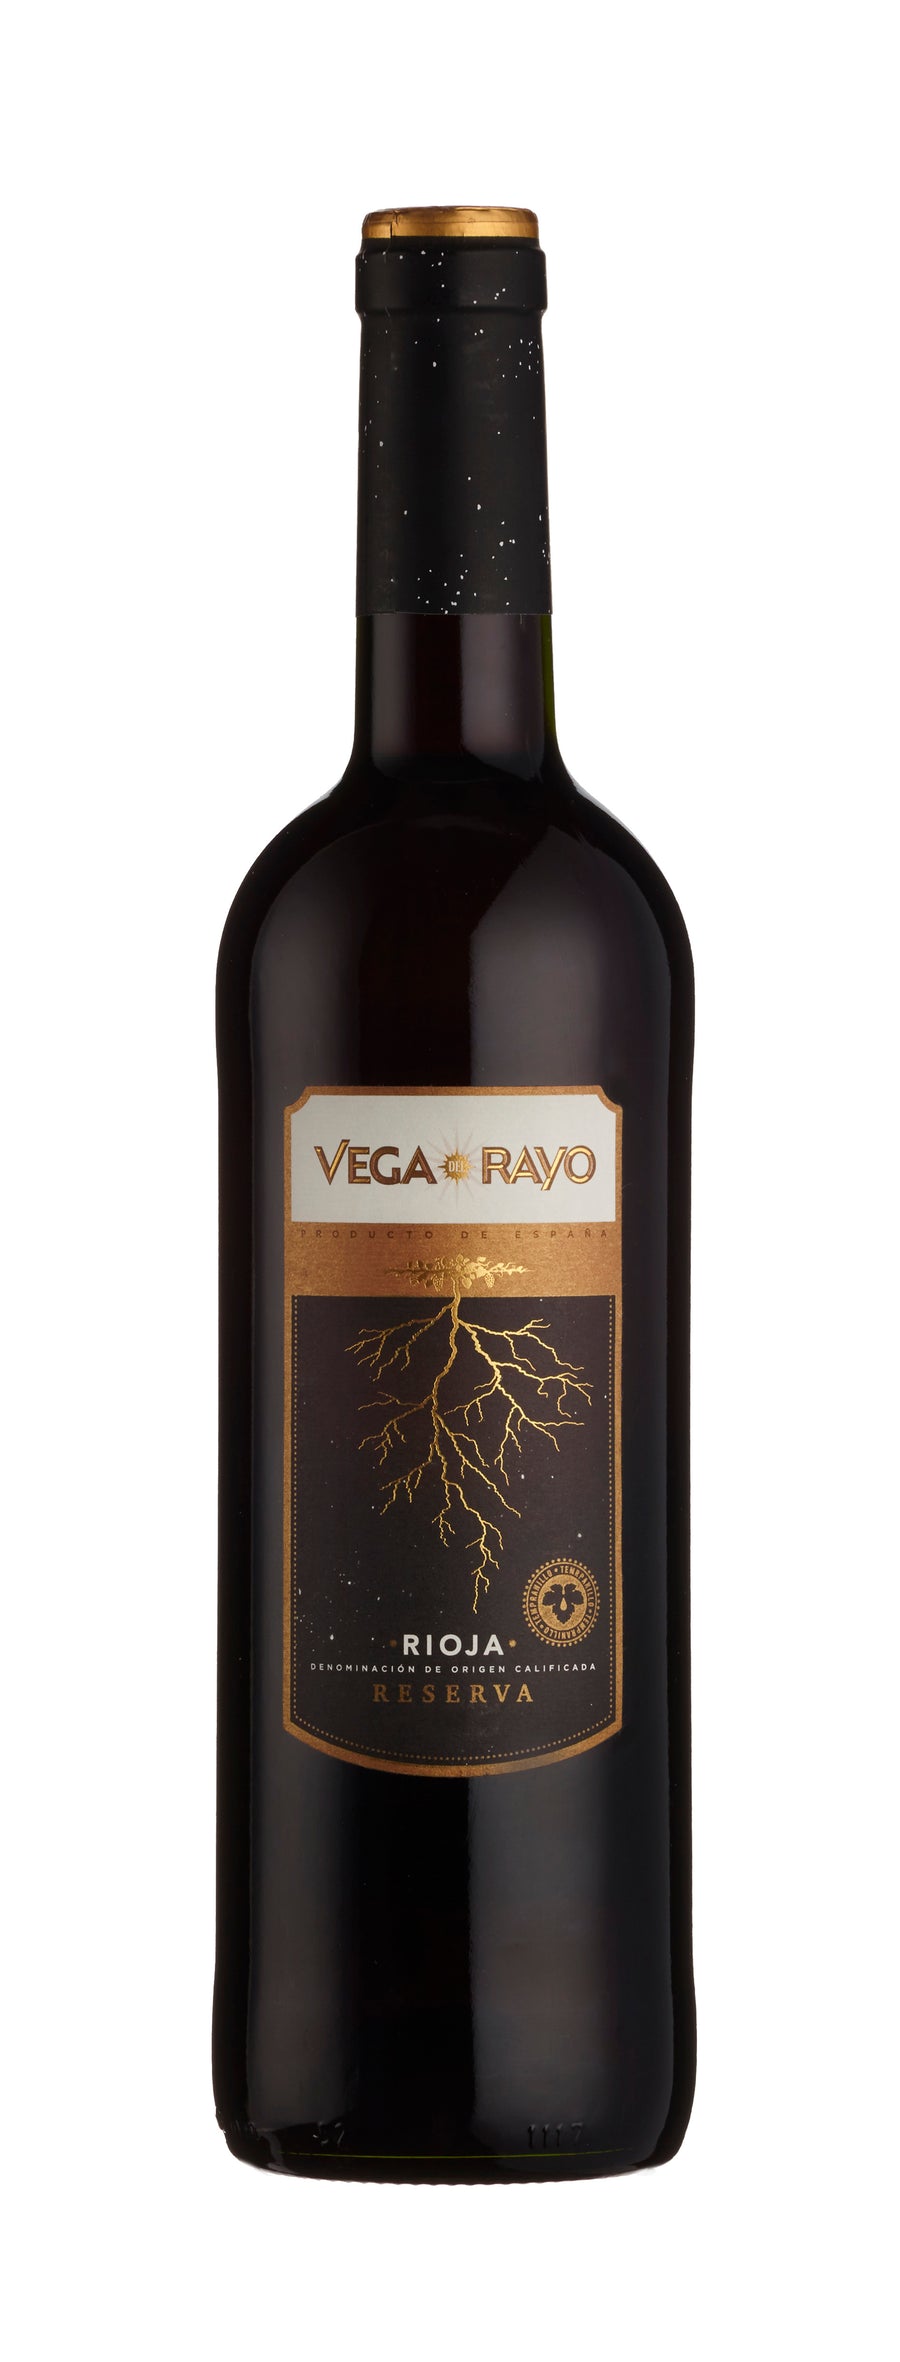 Vega del Rayo Rioja Reserva